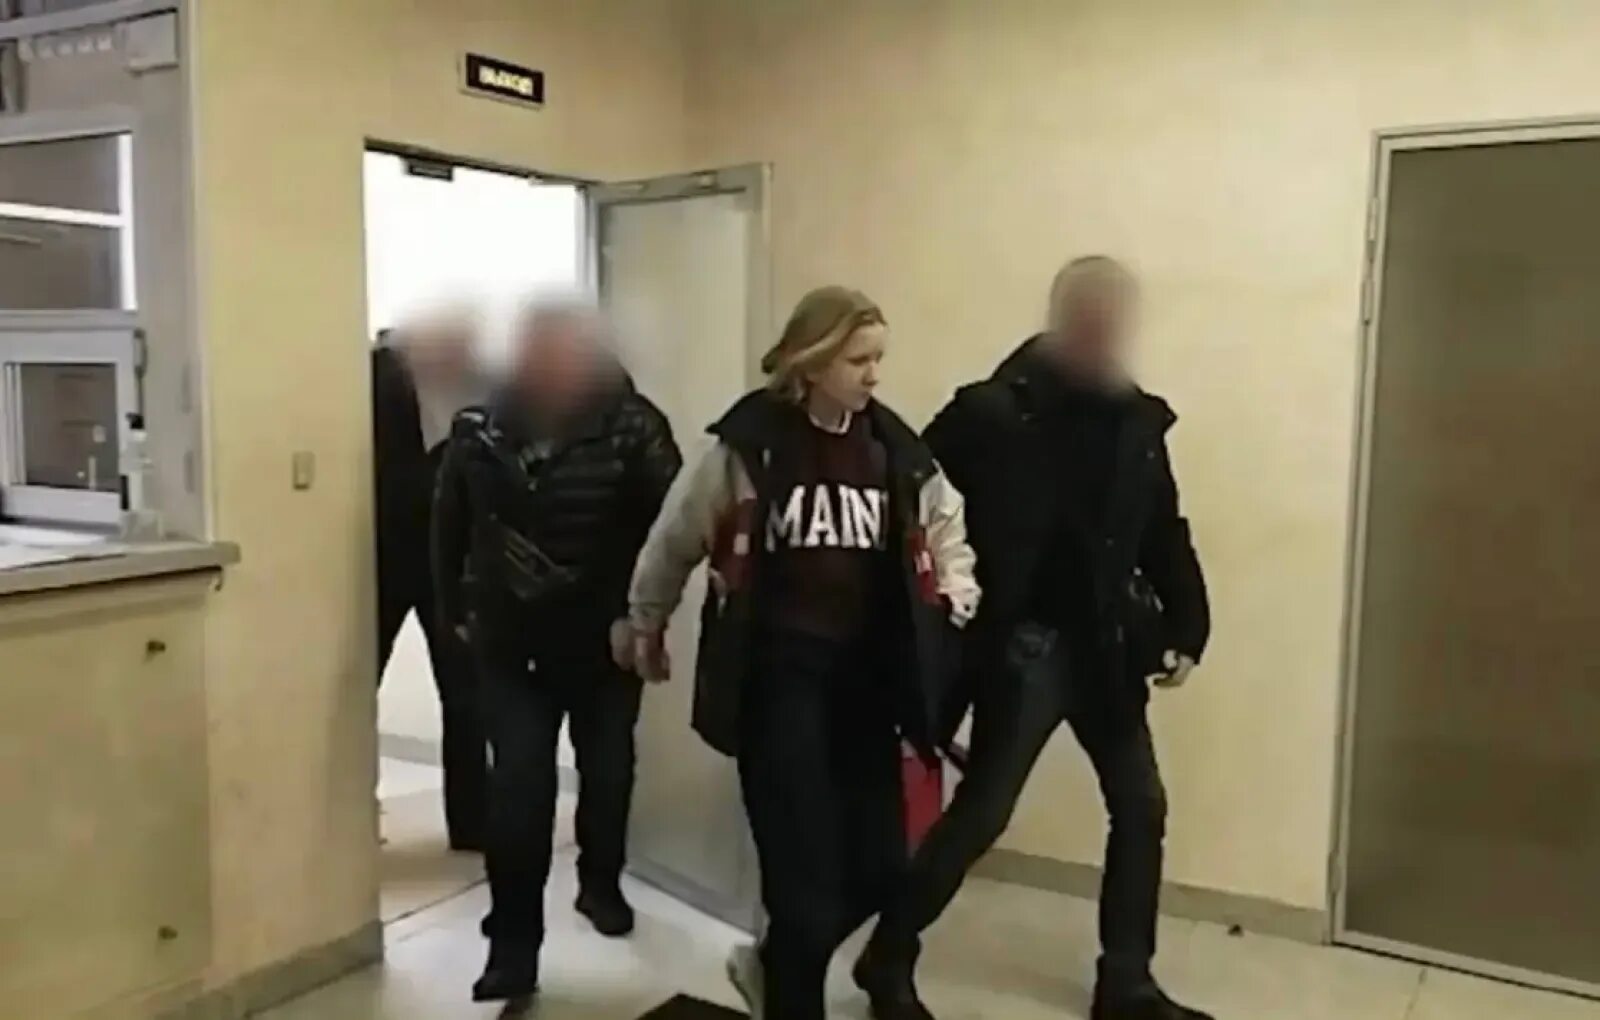 Теракт в москве что известно сейчас. Девушка полицейский. Задержание Дарьи Треповой фото. Арестованные женщины. Девушка устроила теракт.